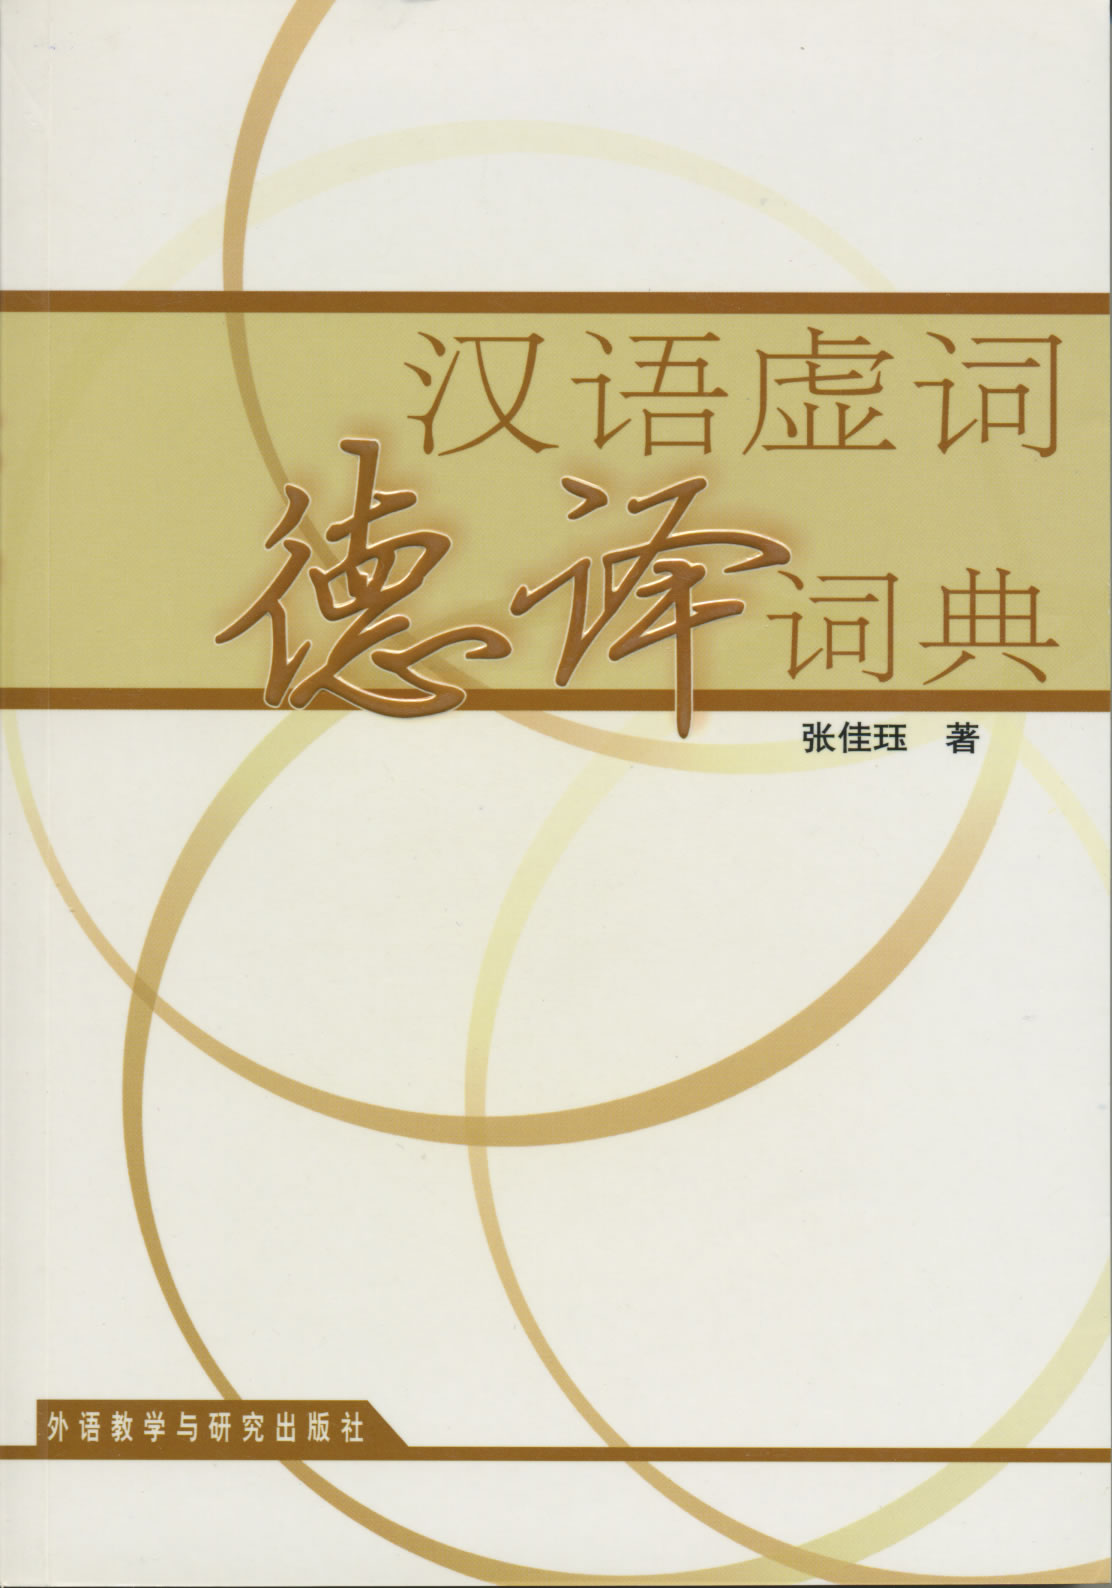 汉语虚词德译词典<br>ISBN: 7-5600-3685-6, 7560036856, 9787560036854